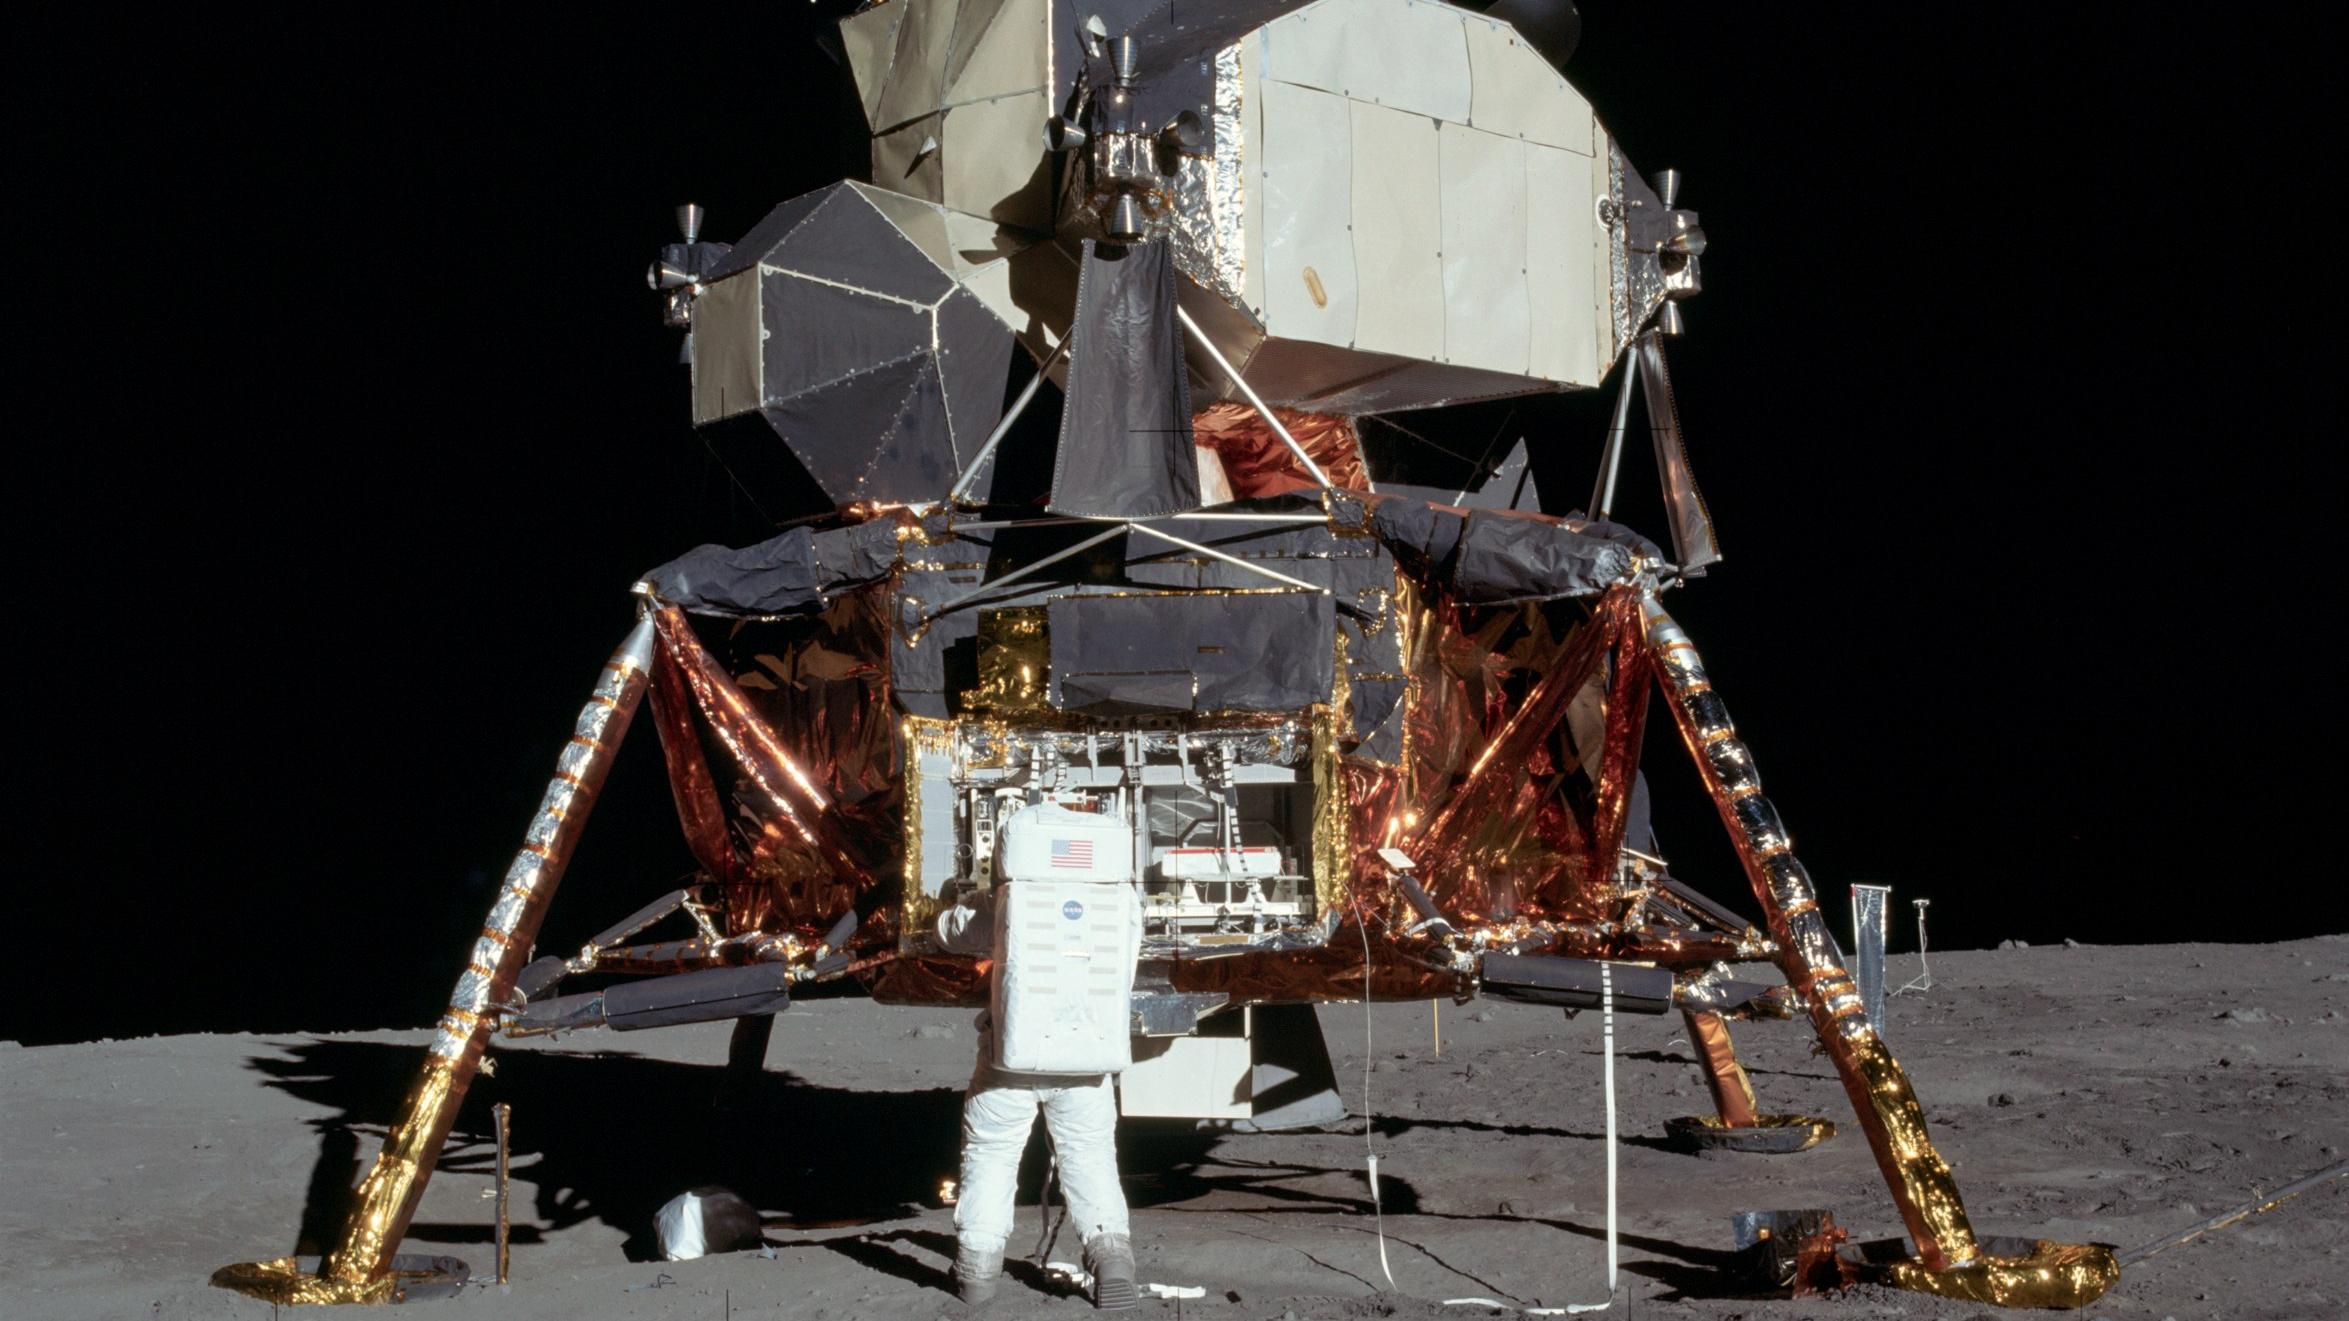 космическое пространство, Луна, НАСА, астронавты - обои на рабочий стол